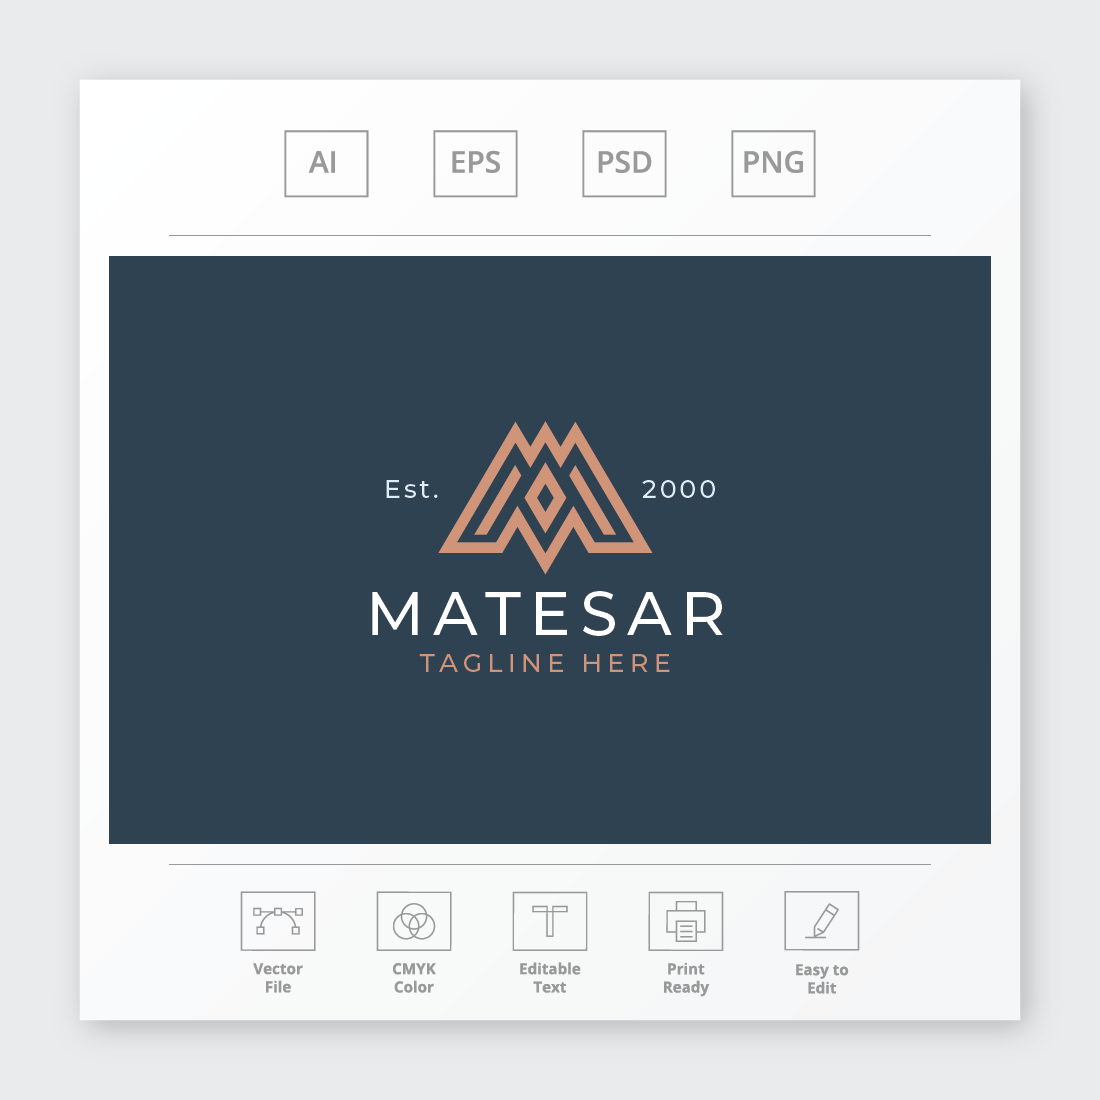 Matesar Letter M Logo cover image.